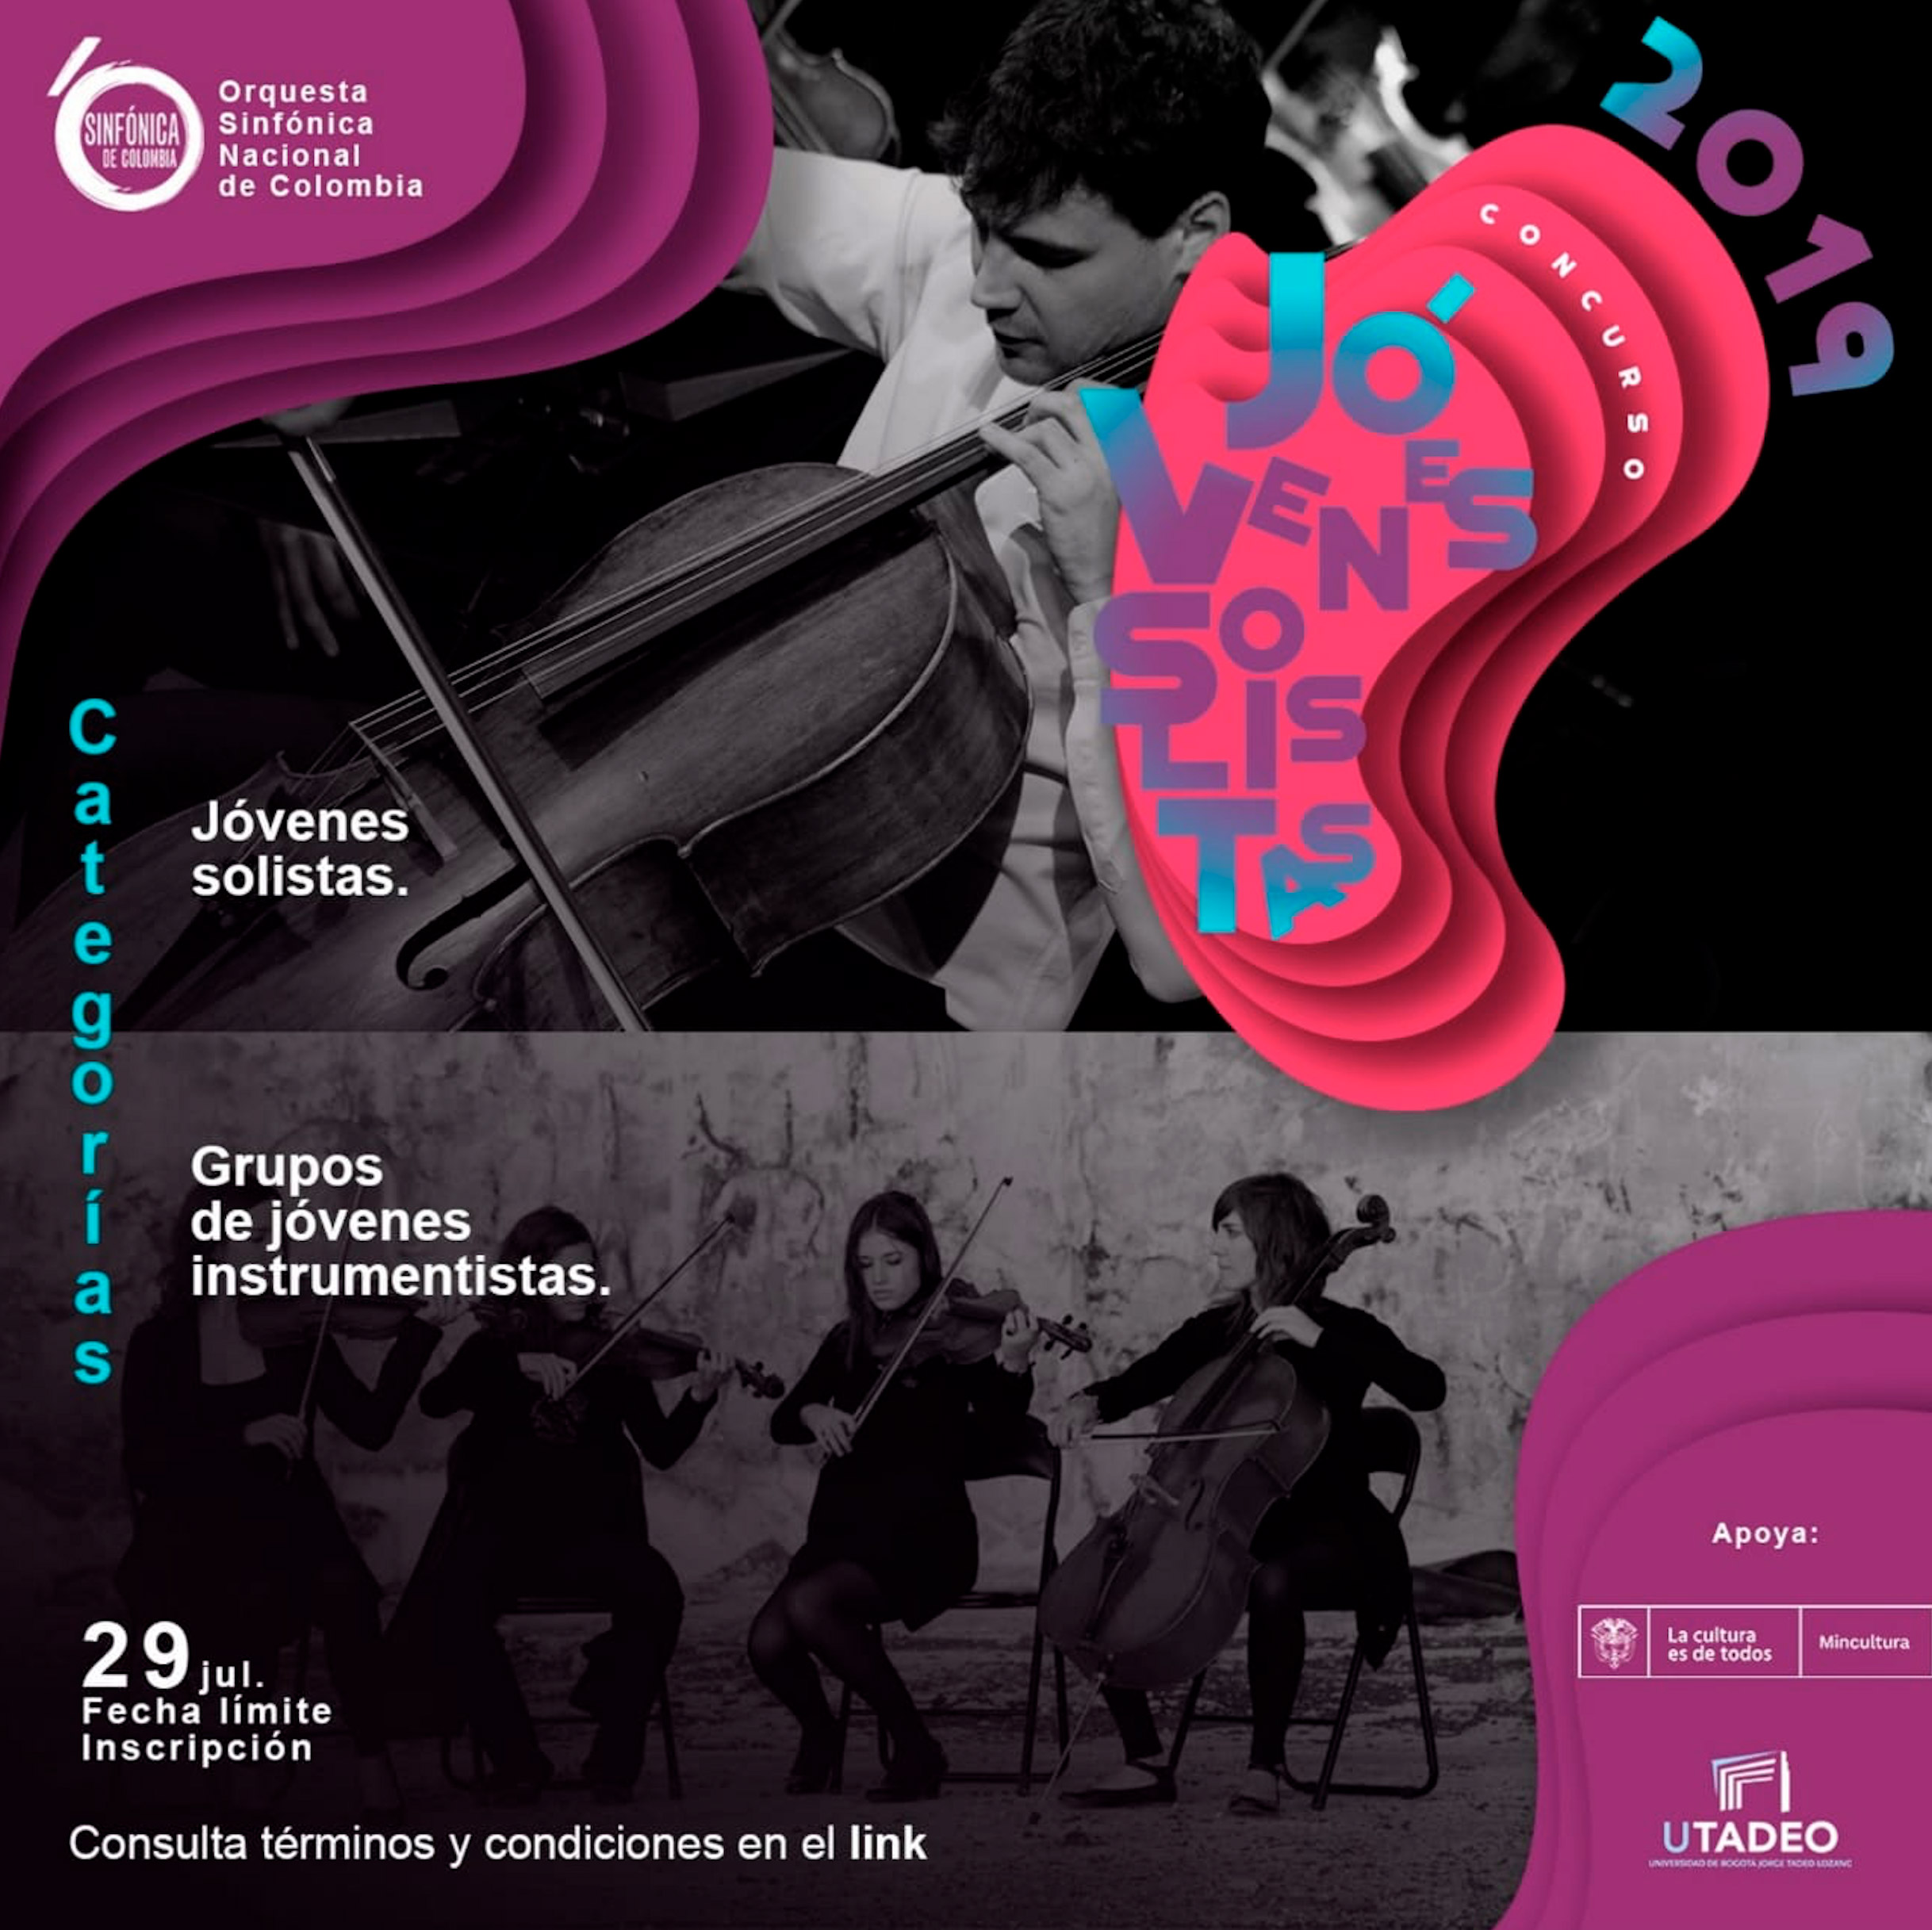 Convocatoria: Sinfónica Nacional de Colombia busca artistas jóvenes para su temporada 2019